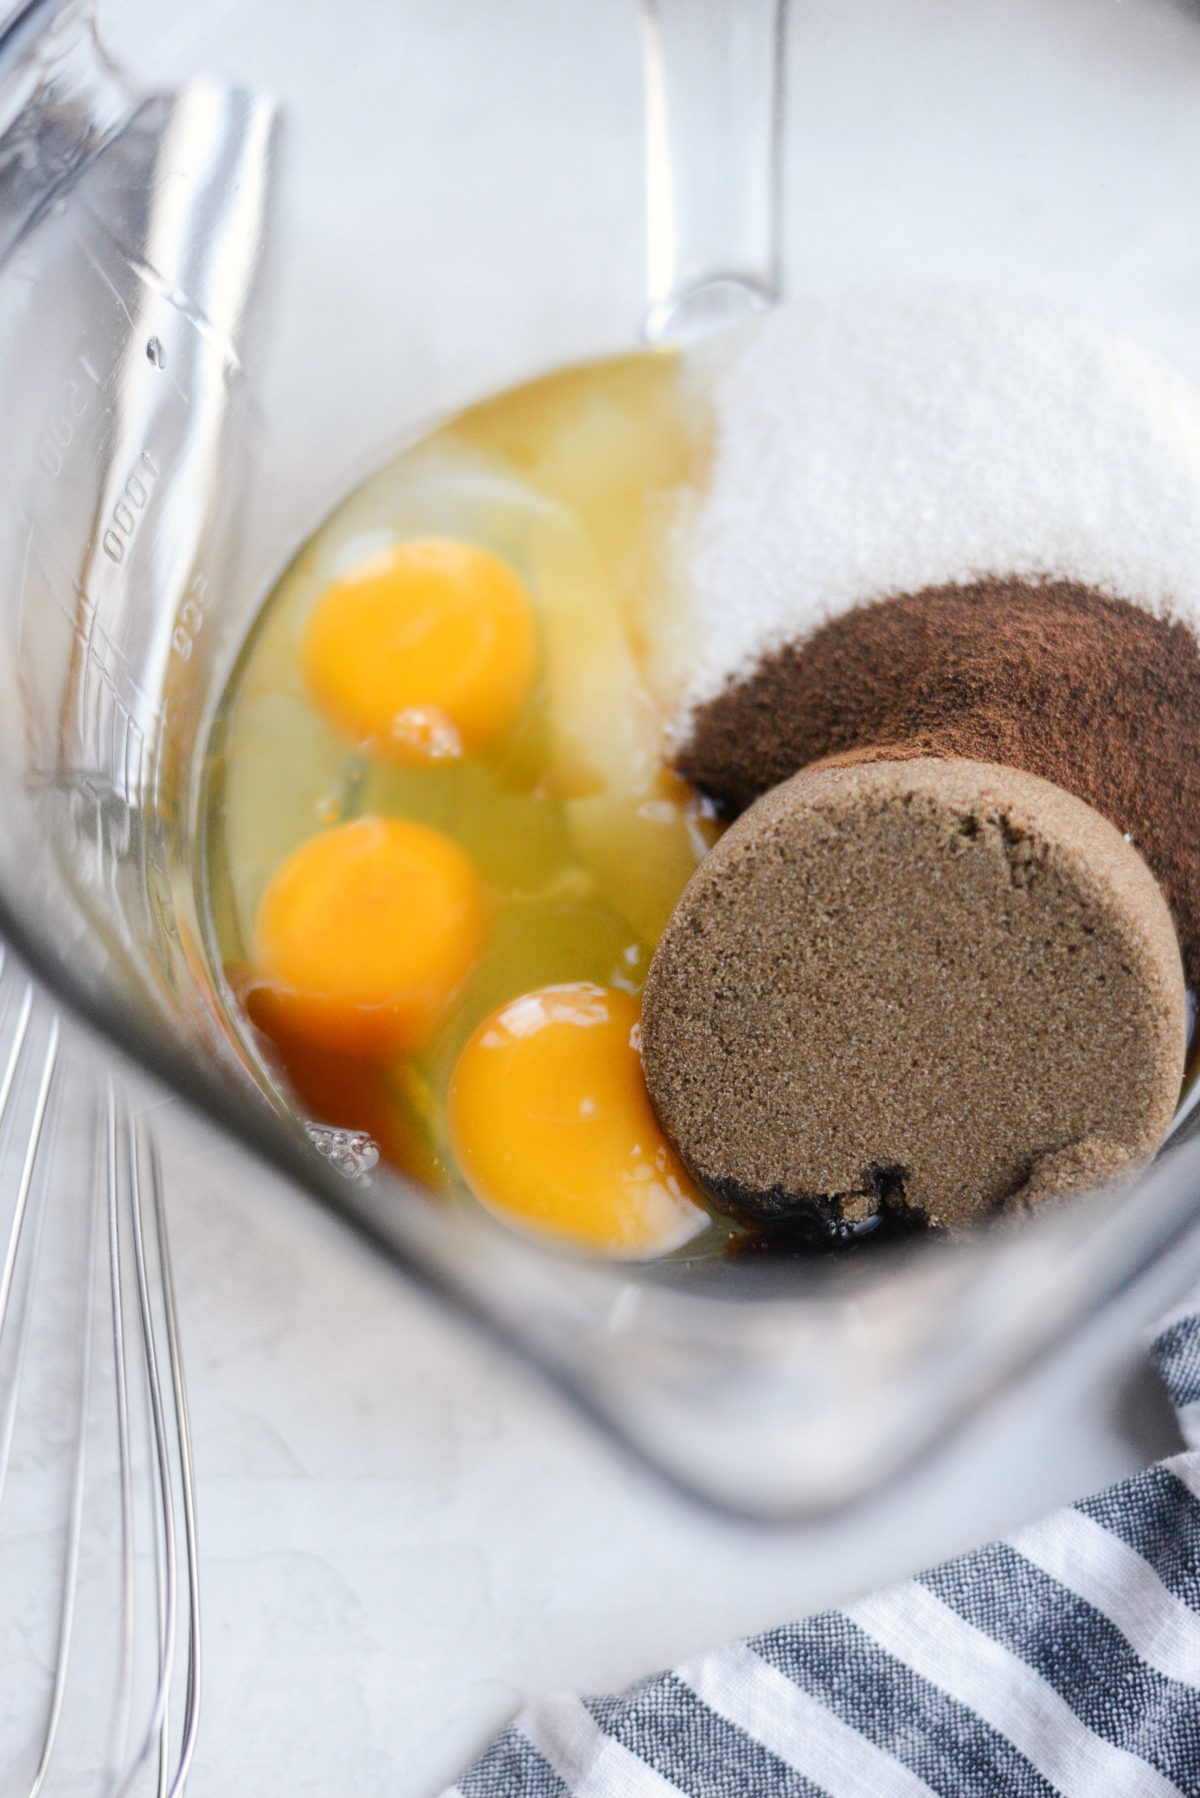 Add eggs, vanilla, sugars and espresso powder to a mixing bowl